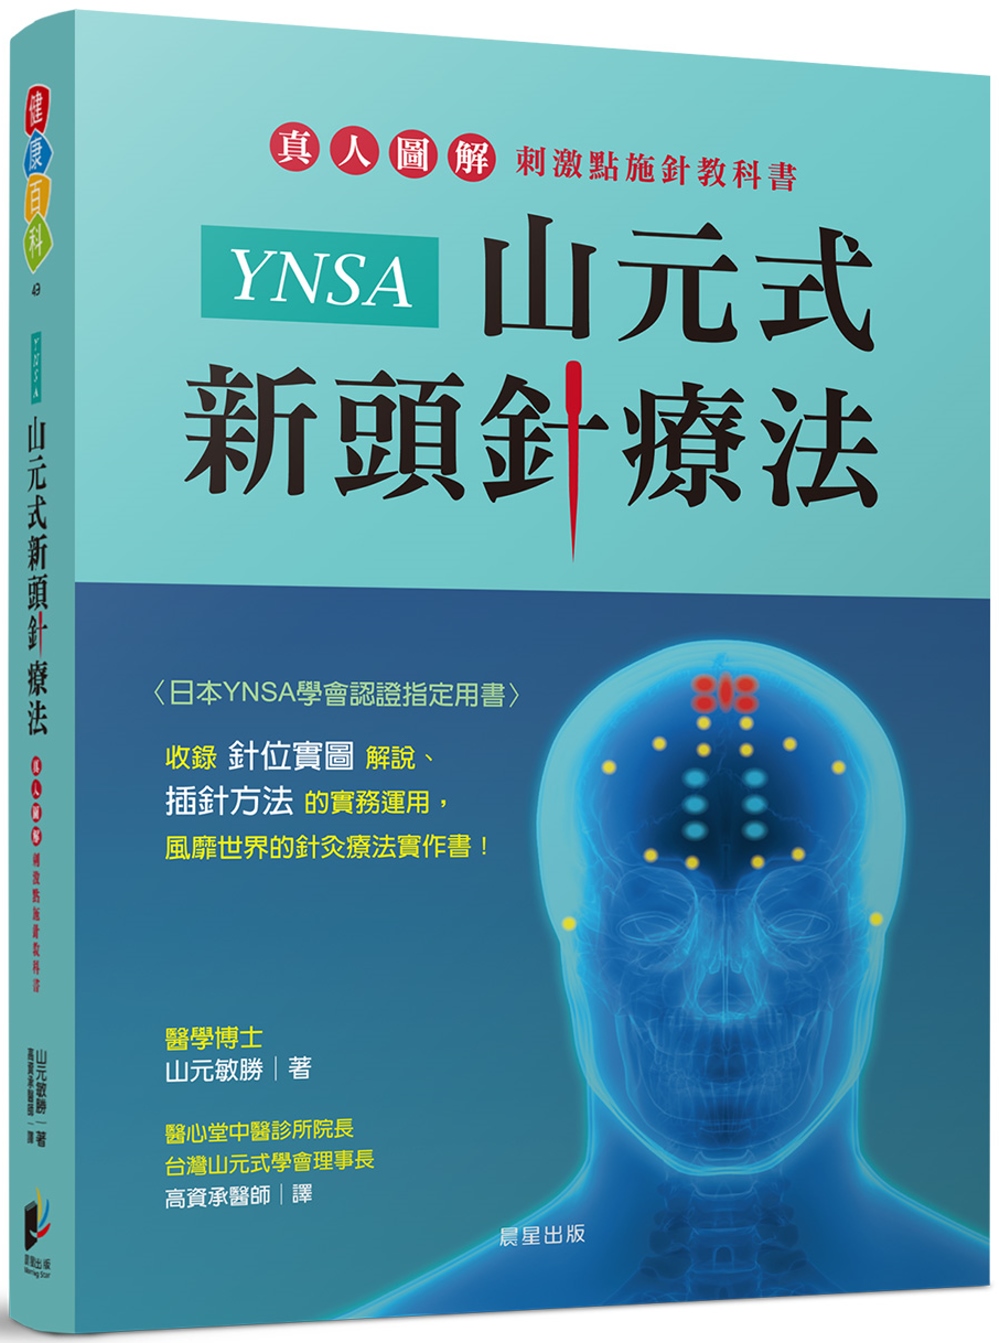 YNSA 山元式頭針療法 - 本